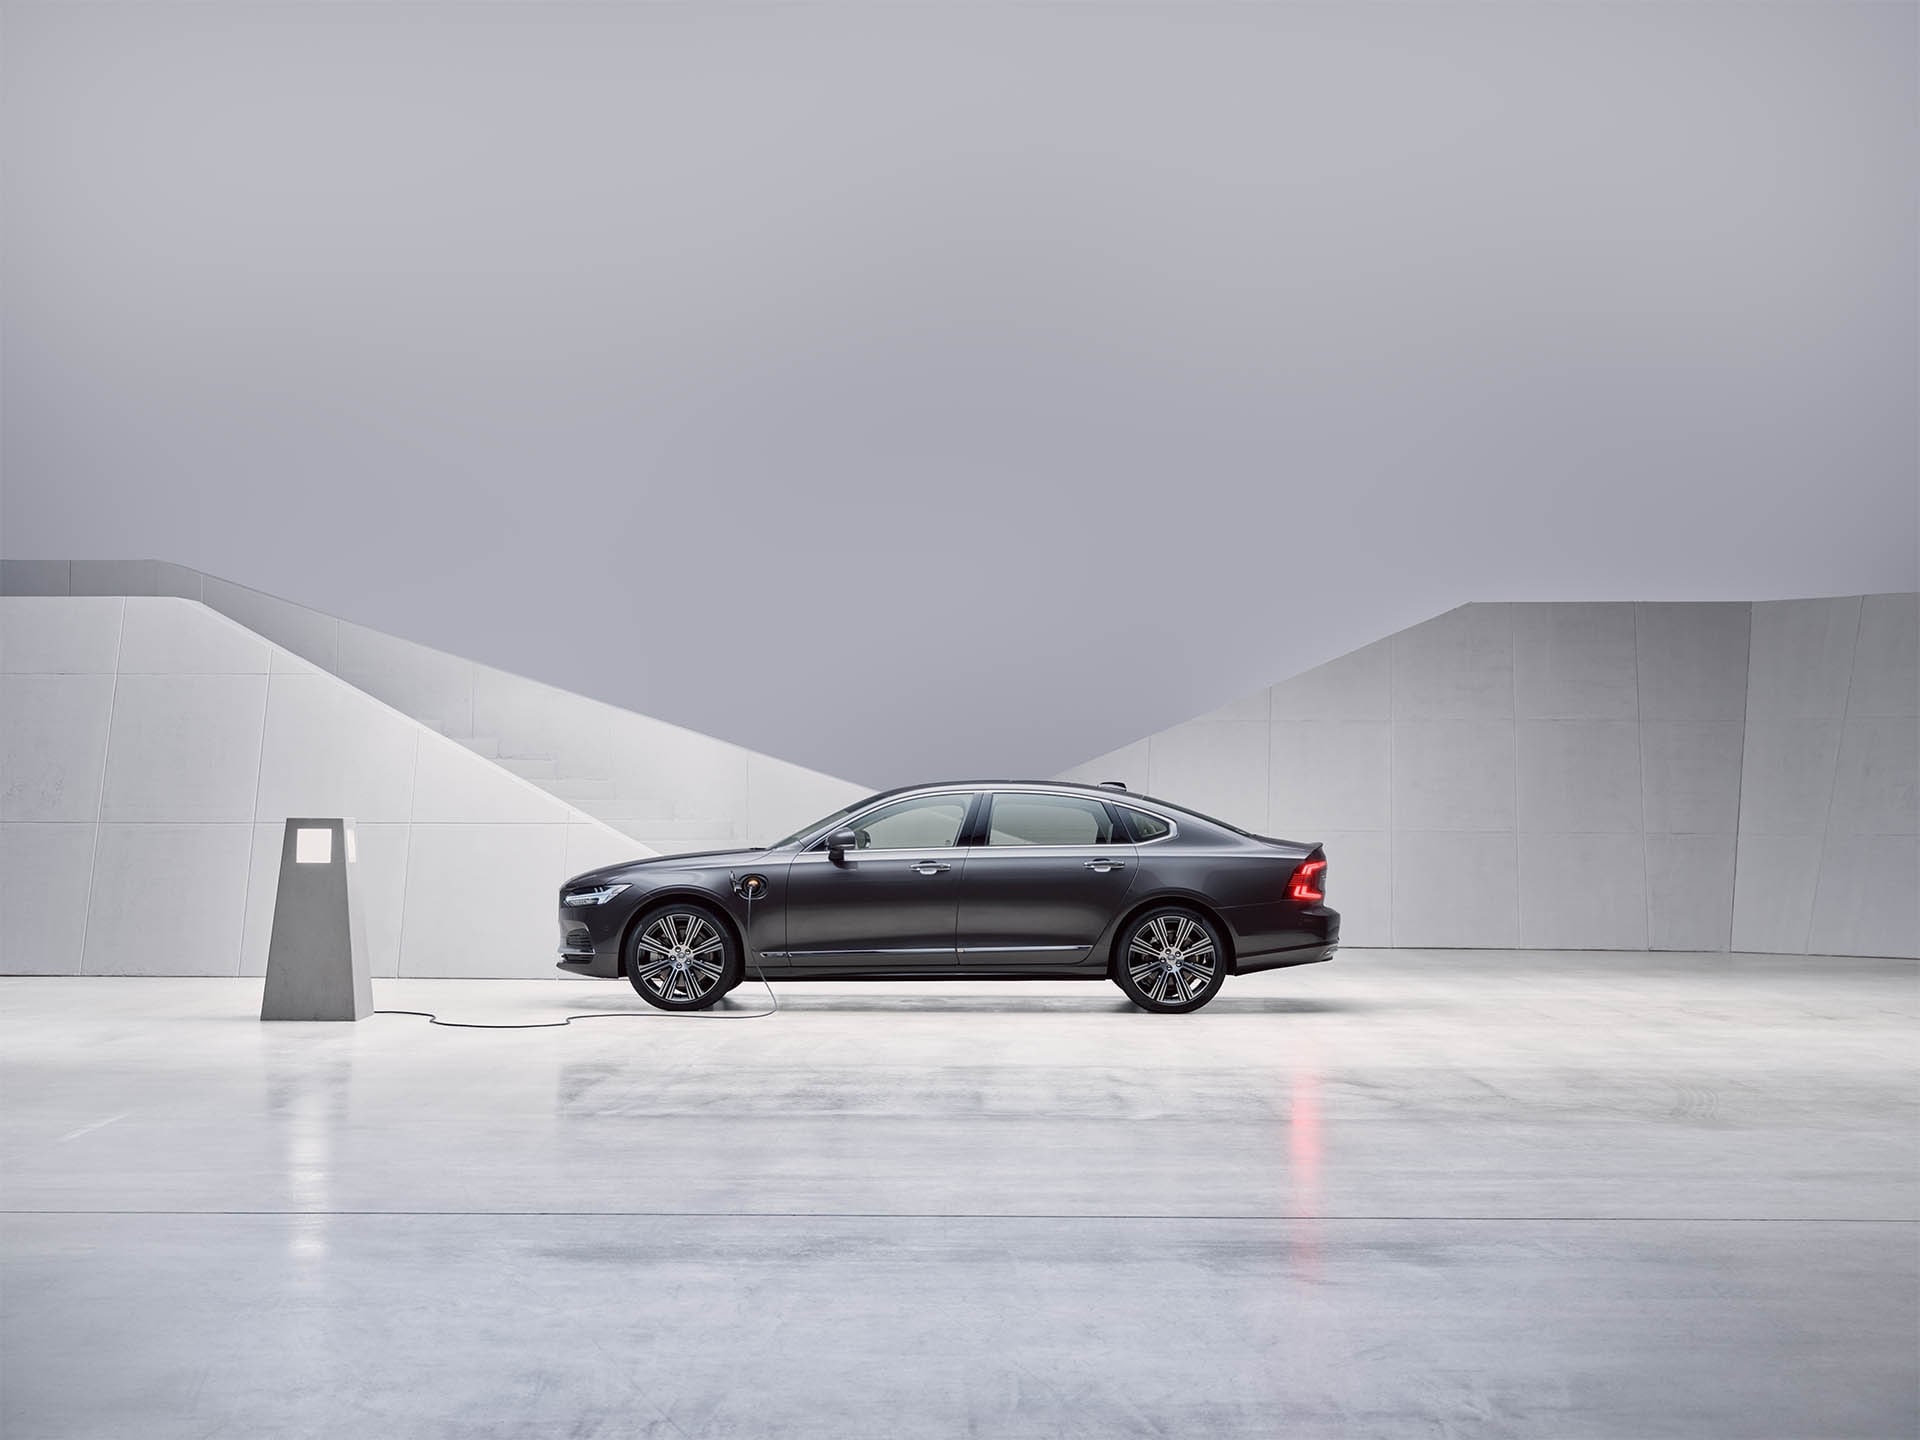 Гібридний седан Volvo S90 кольору Pebble Grey стоїть на місці й заряджається